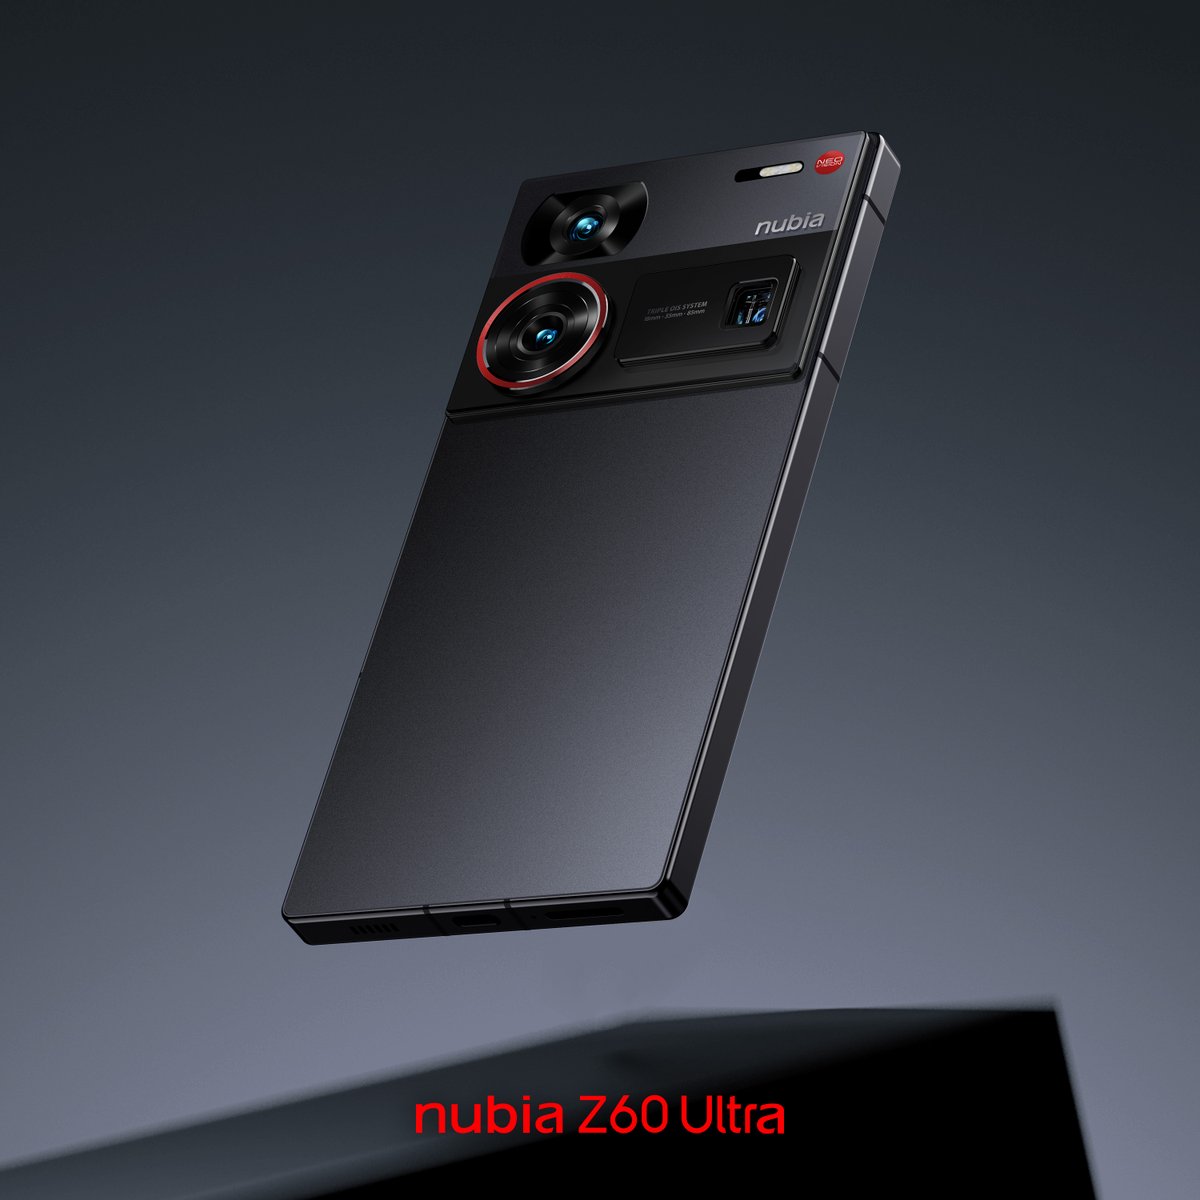 プロセッサ「Snapdragon 8 Gen 3」と、最大「16GBのRAM」を搭載した【nubia Z60 Ultra】

皆さん、このデザインはいかがですか？

#ZTE #nubia